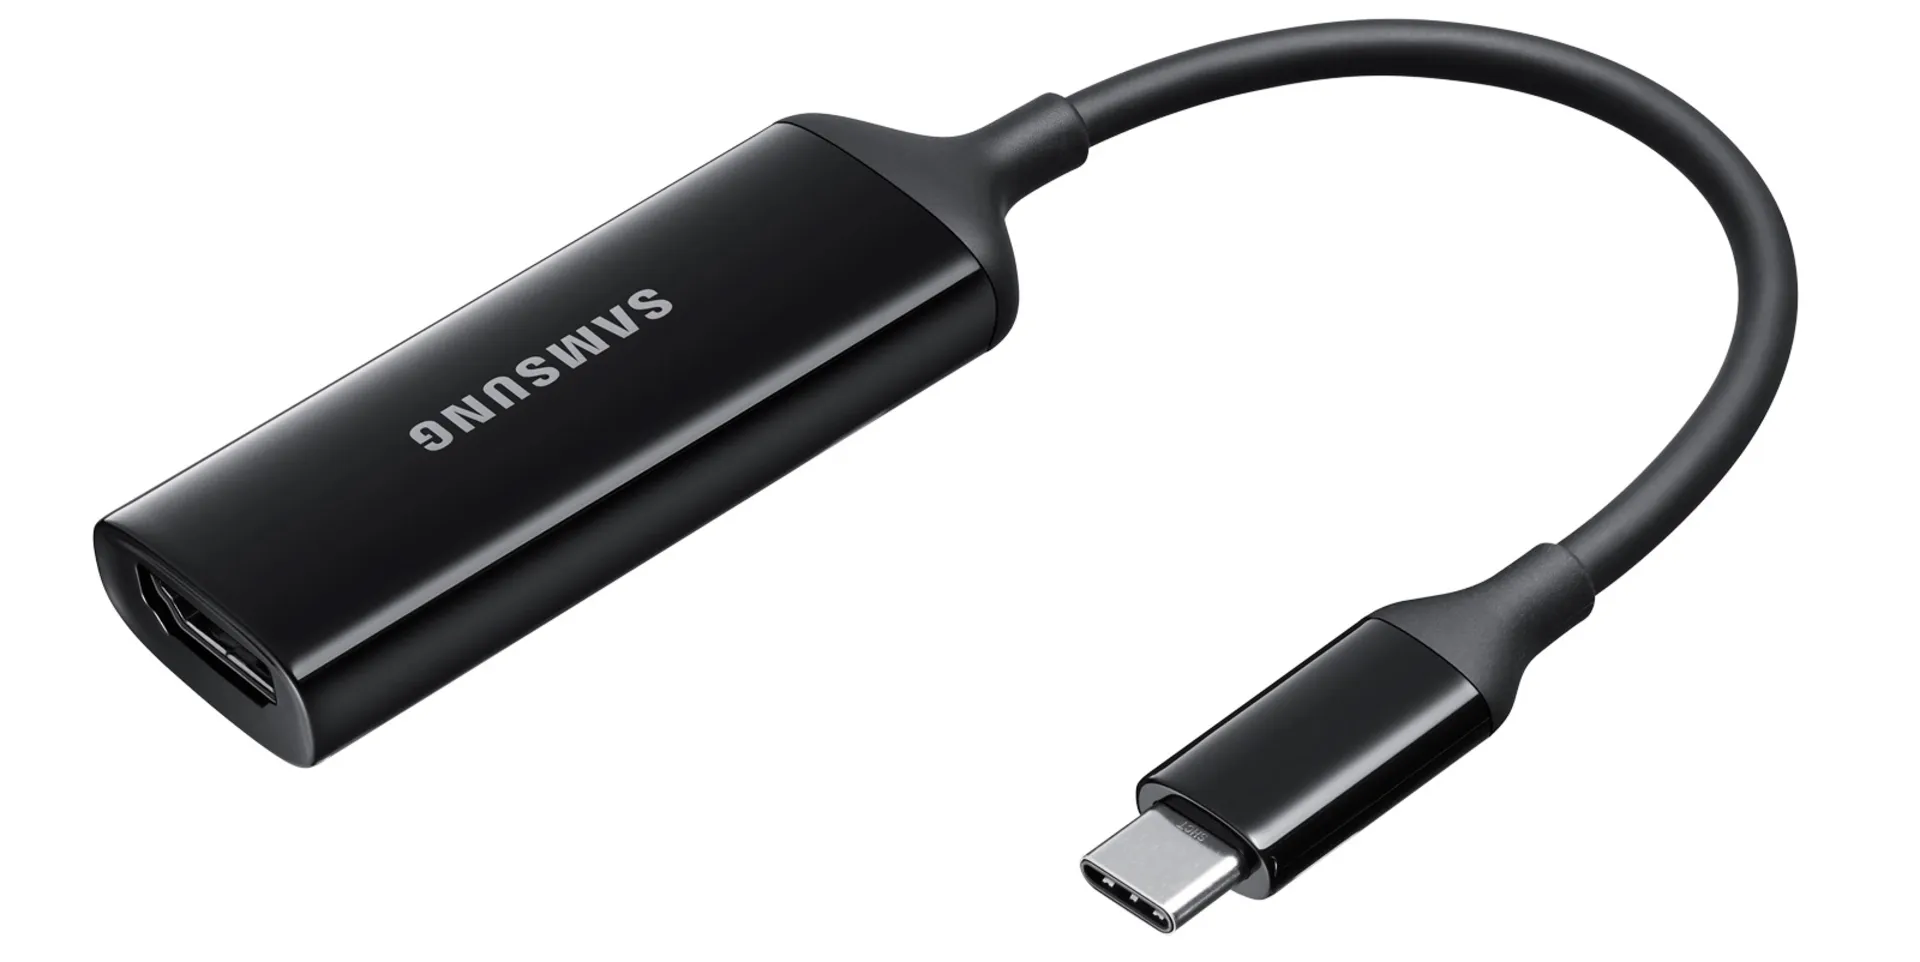 تبدیل HDMI به USB